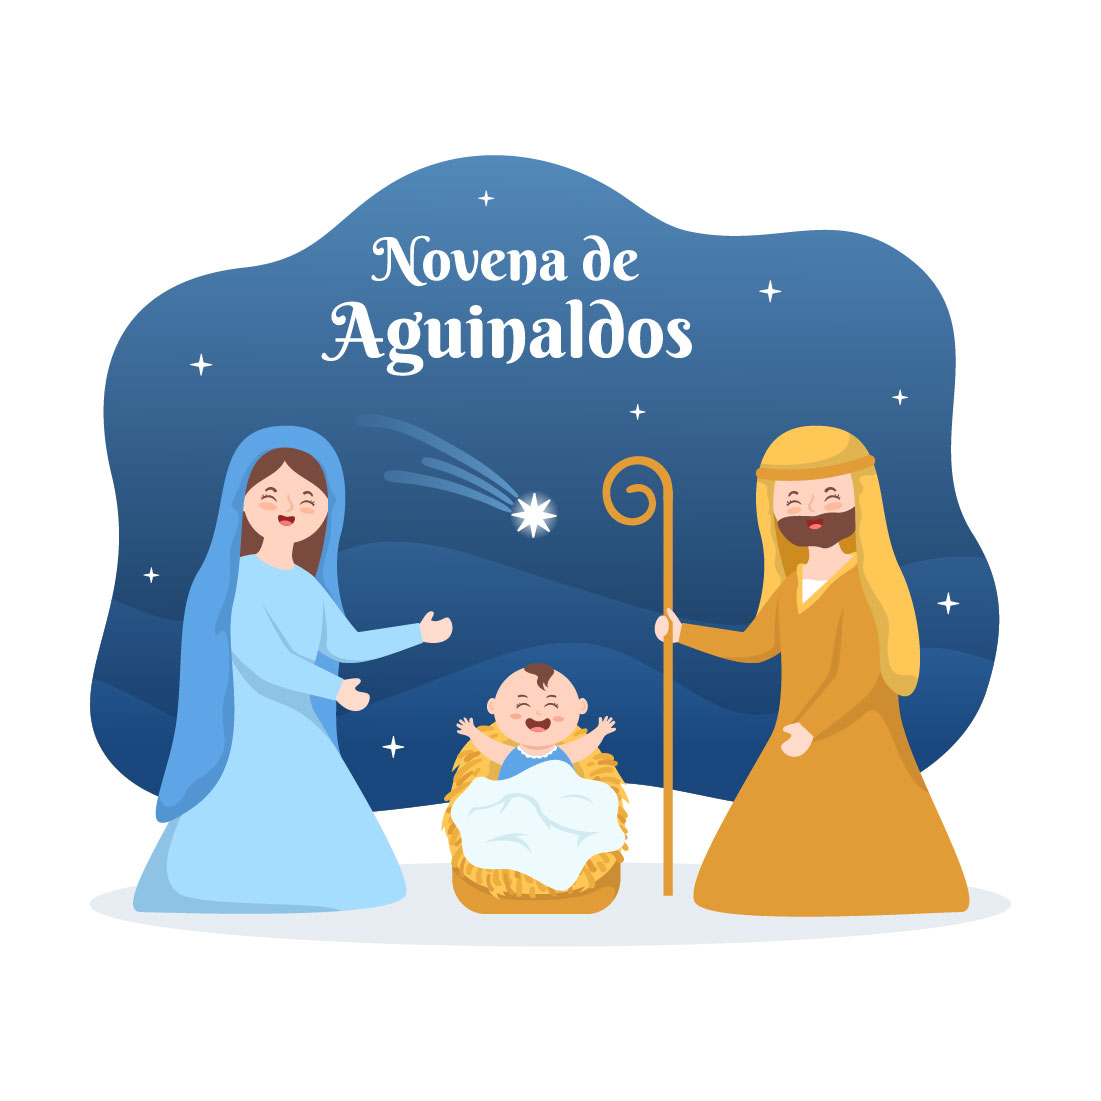 Novena De Aguinaldos Holiday Illustration cover image.